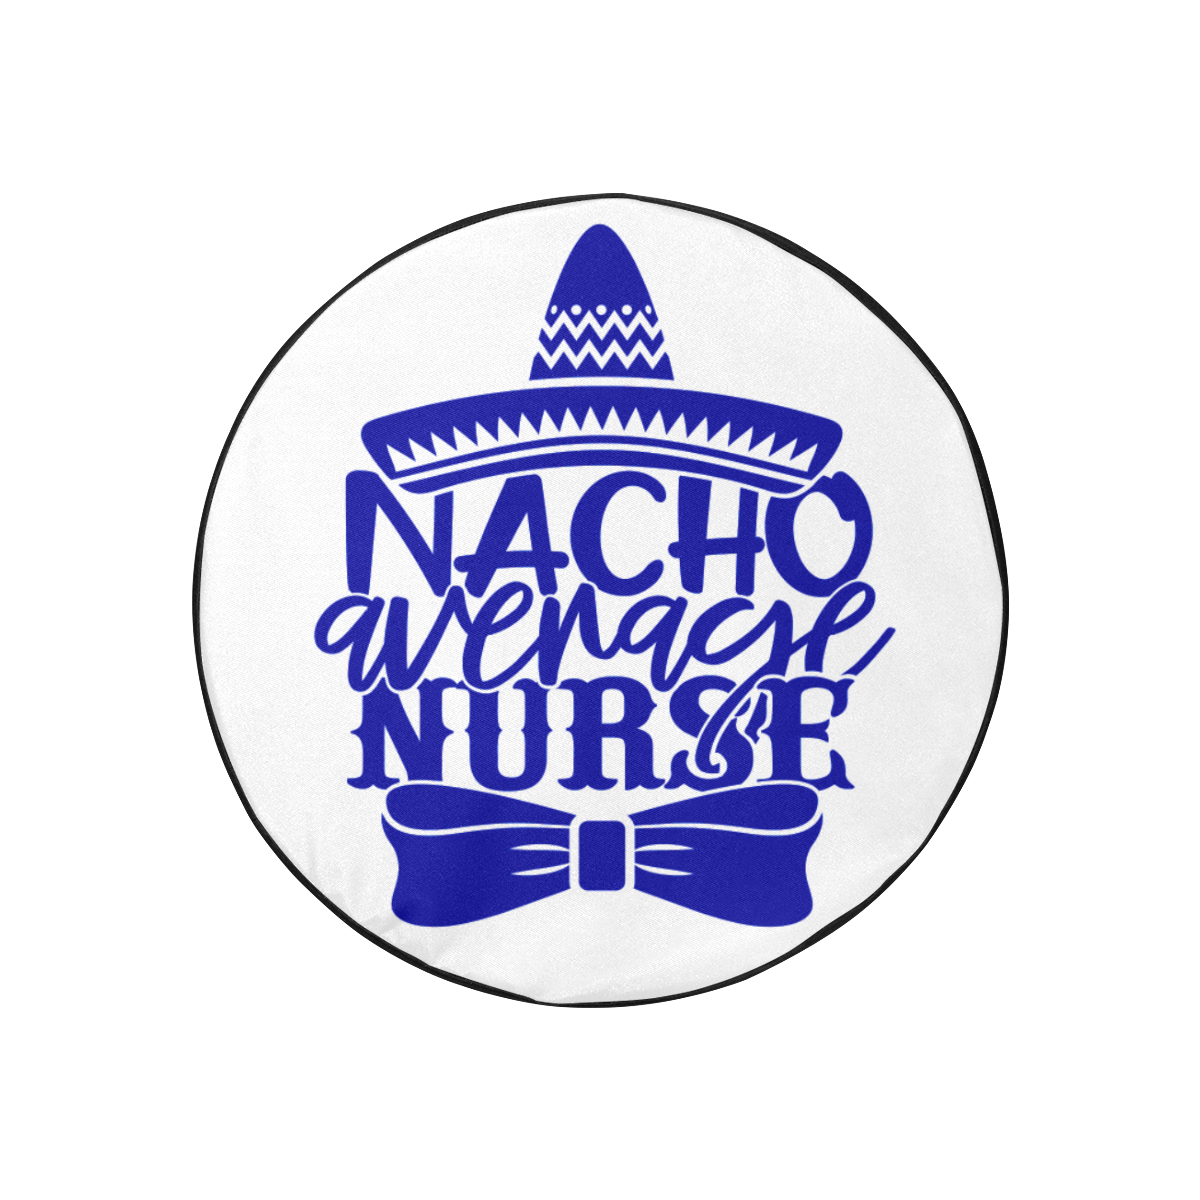 Humor Nacho average Nurse indigo 30 Inch Spare Tire Cover